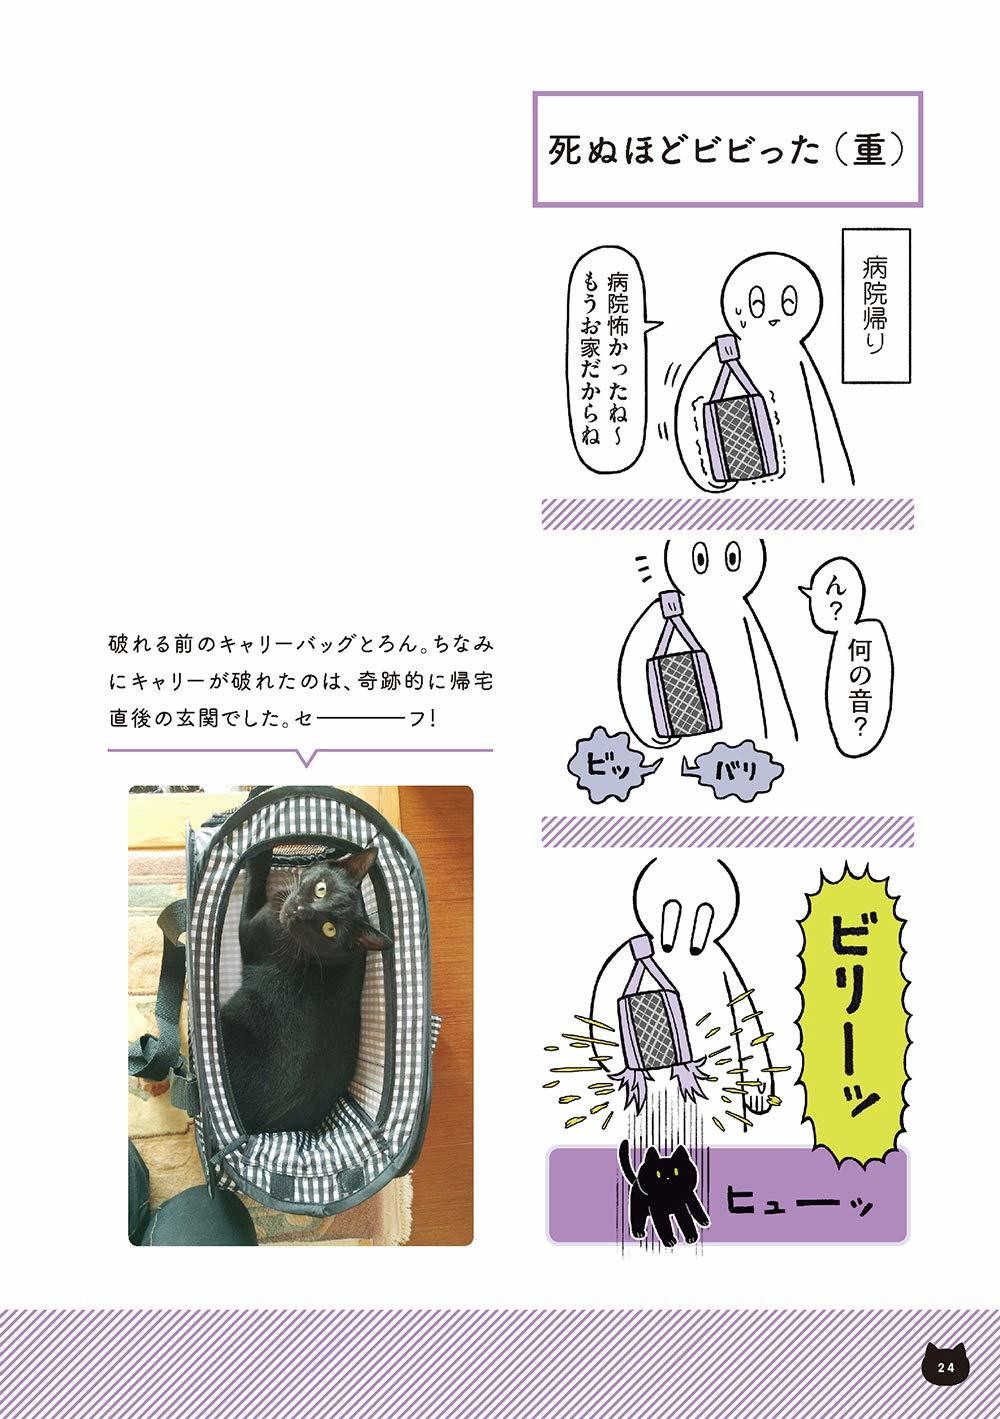 Twitterで話題の猫絵日記が書籍化 黒猫ろんと暮らしたら が発売 ねこナビ